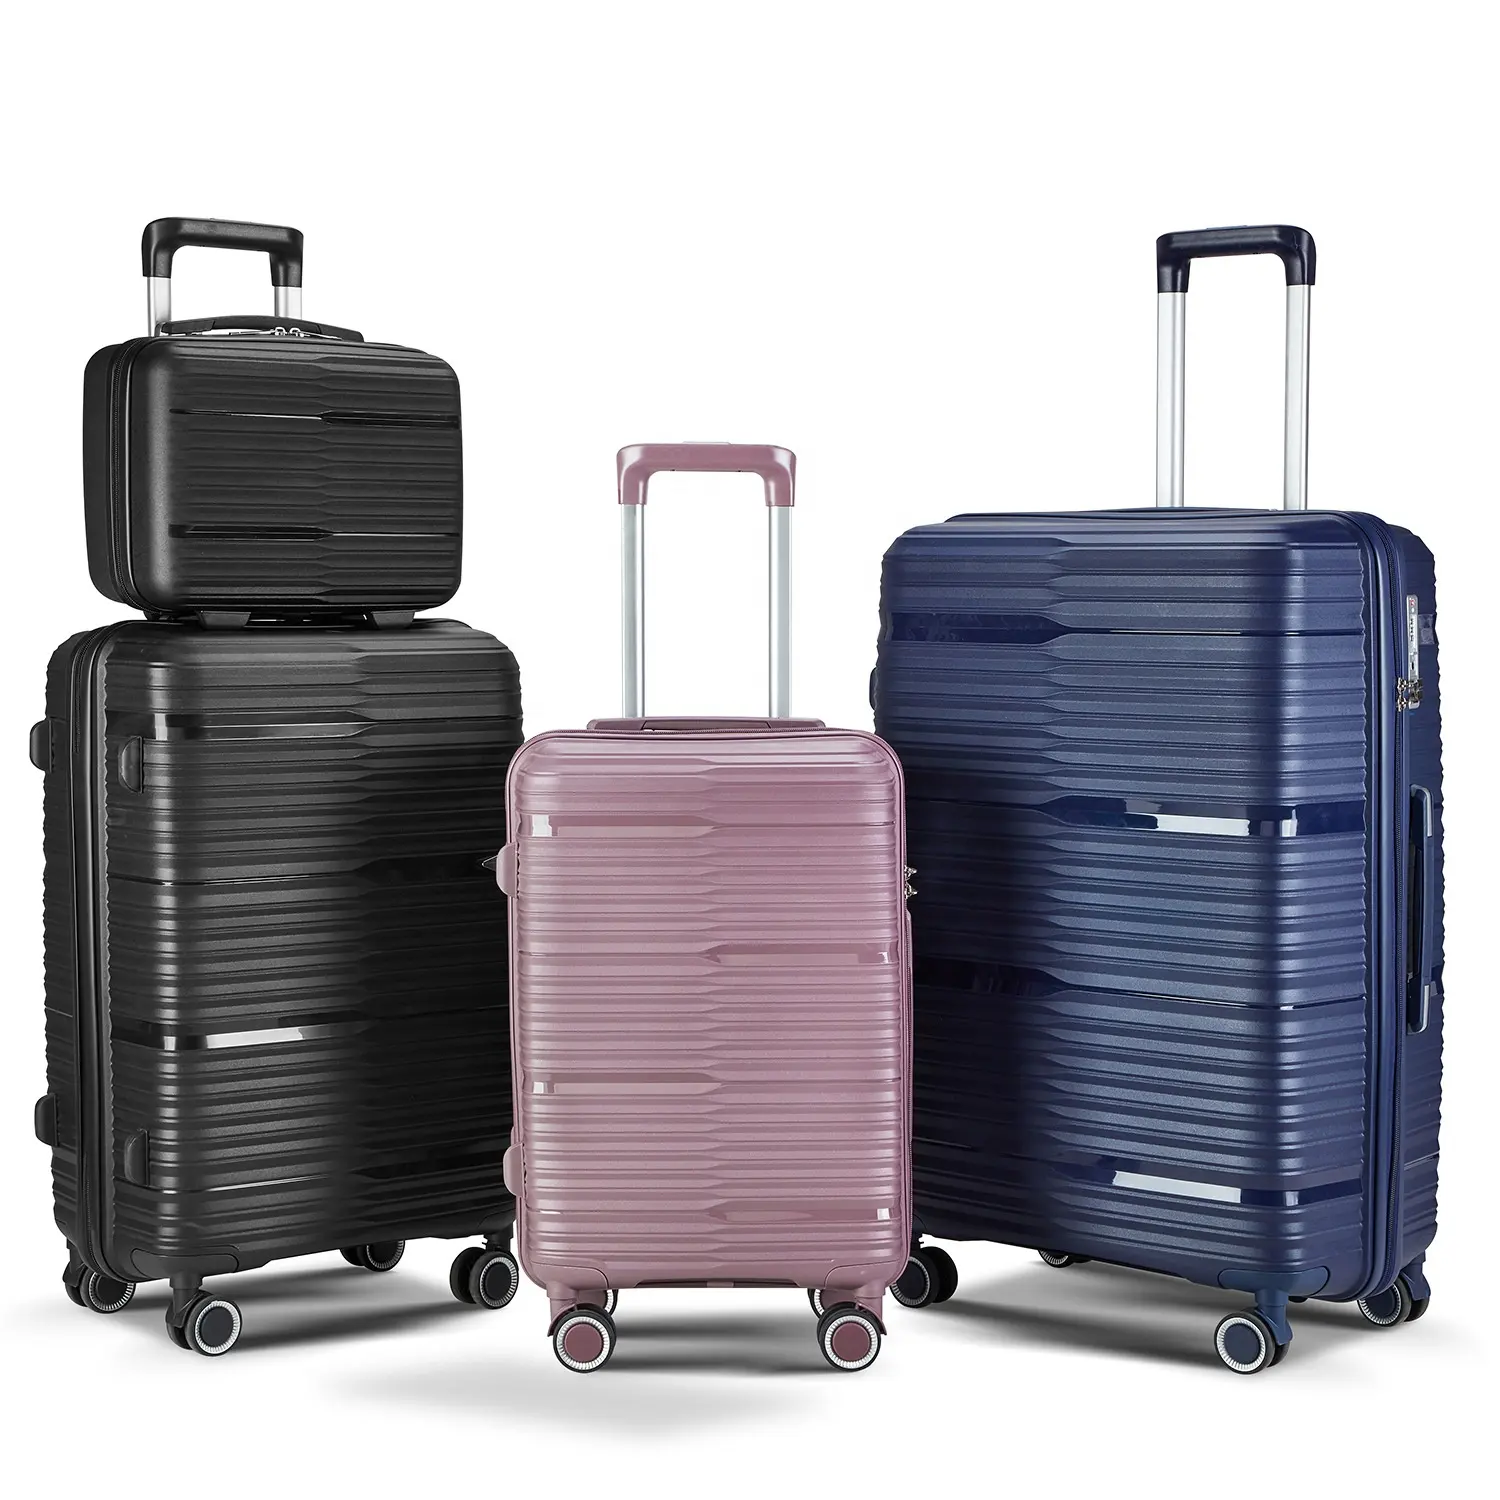 20 24 pollici bagaglio a mano in PP valigia bagaglio da viaggio Set di valigie in PP borse per bagagli con guscio rigido